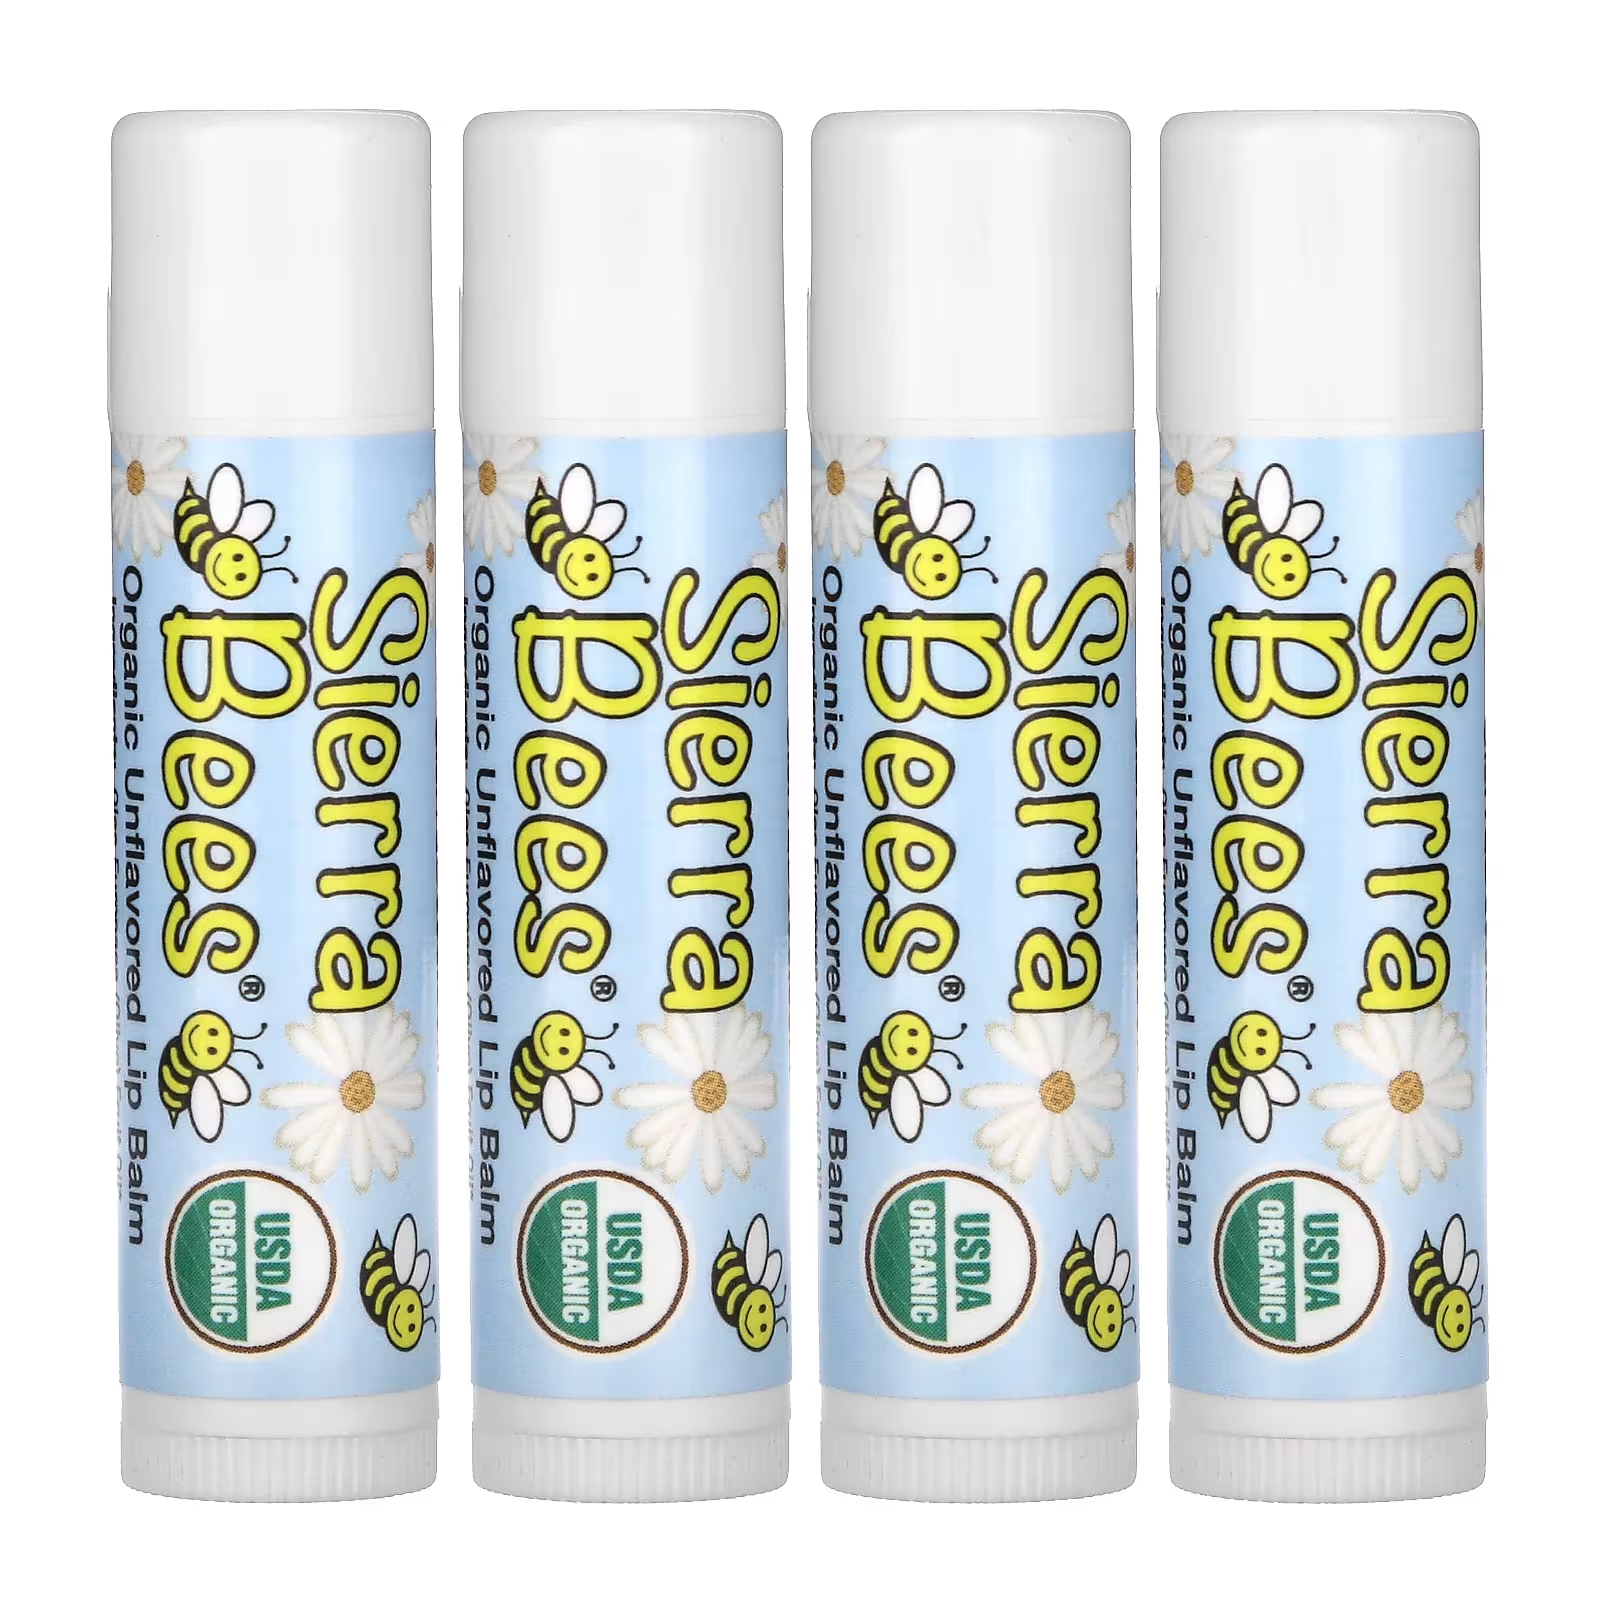 Органические бальзамы для губ Sierra Bees, 4 упаковки по 4,25 г органические бальзамы для губ sierra bees с маслом какао 4 упаковки по 4 25 г